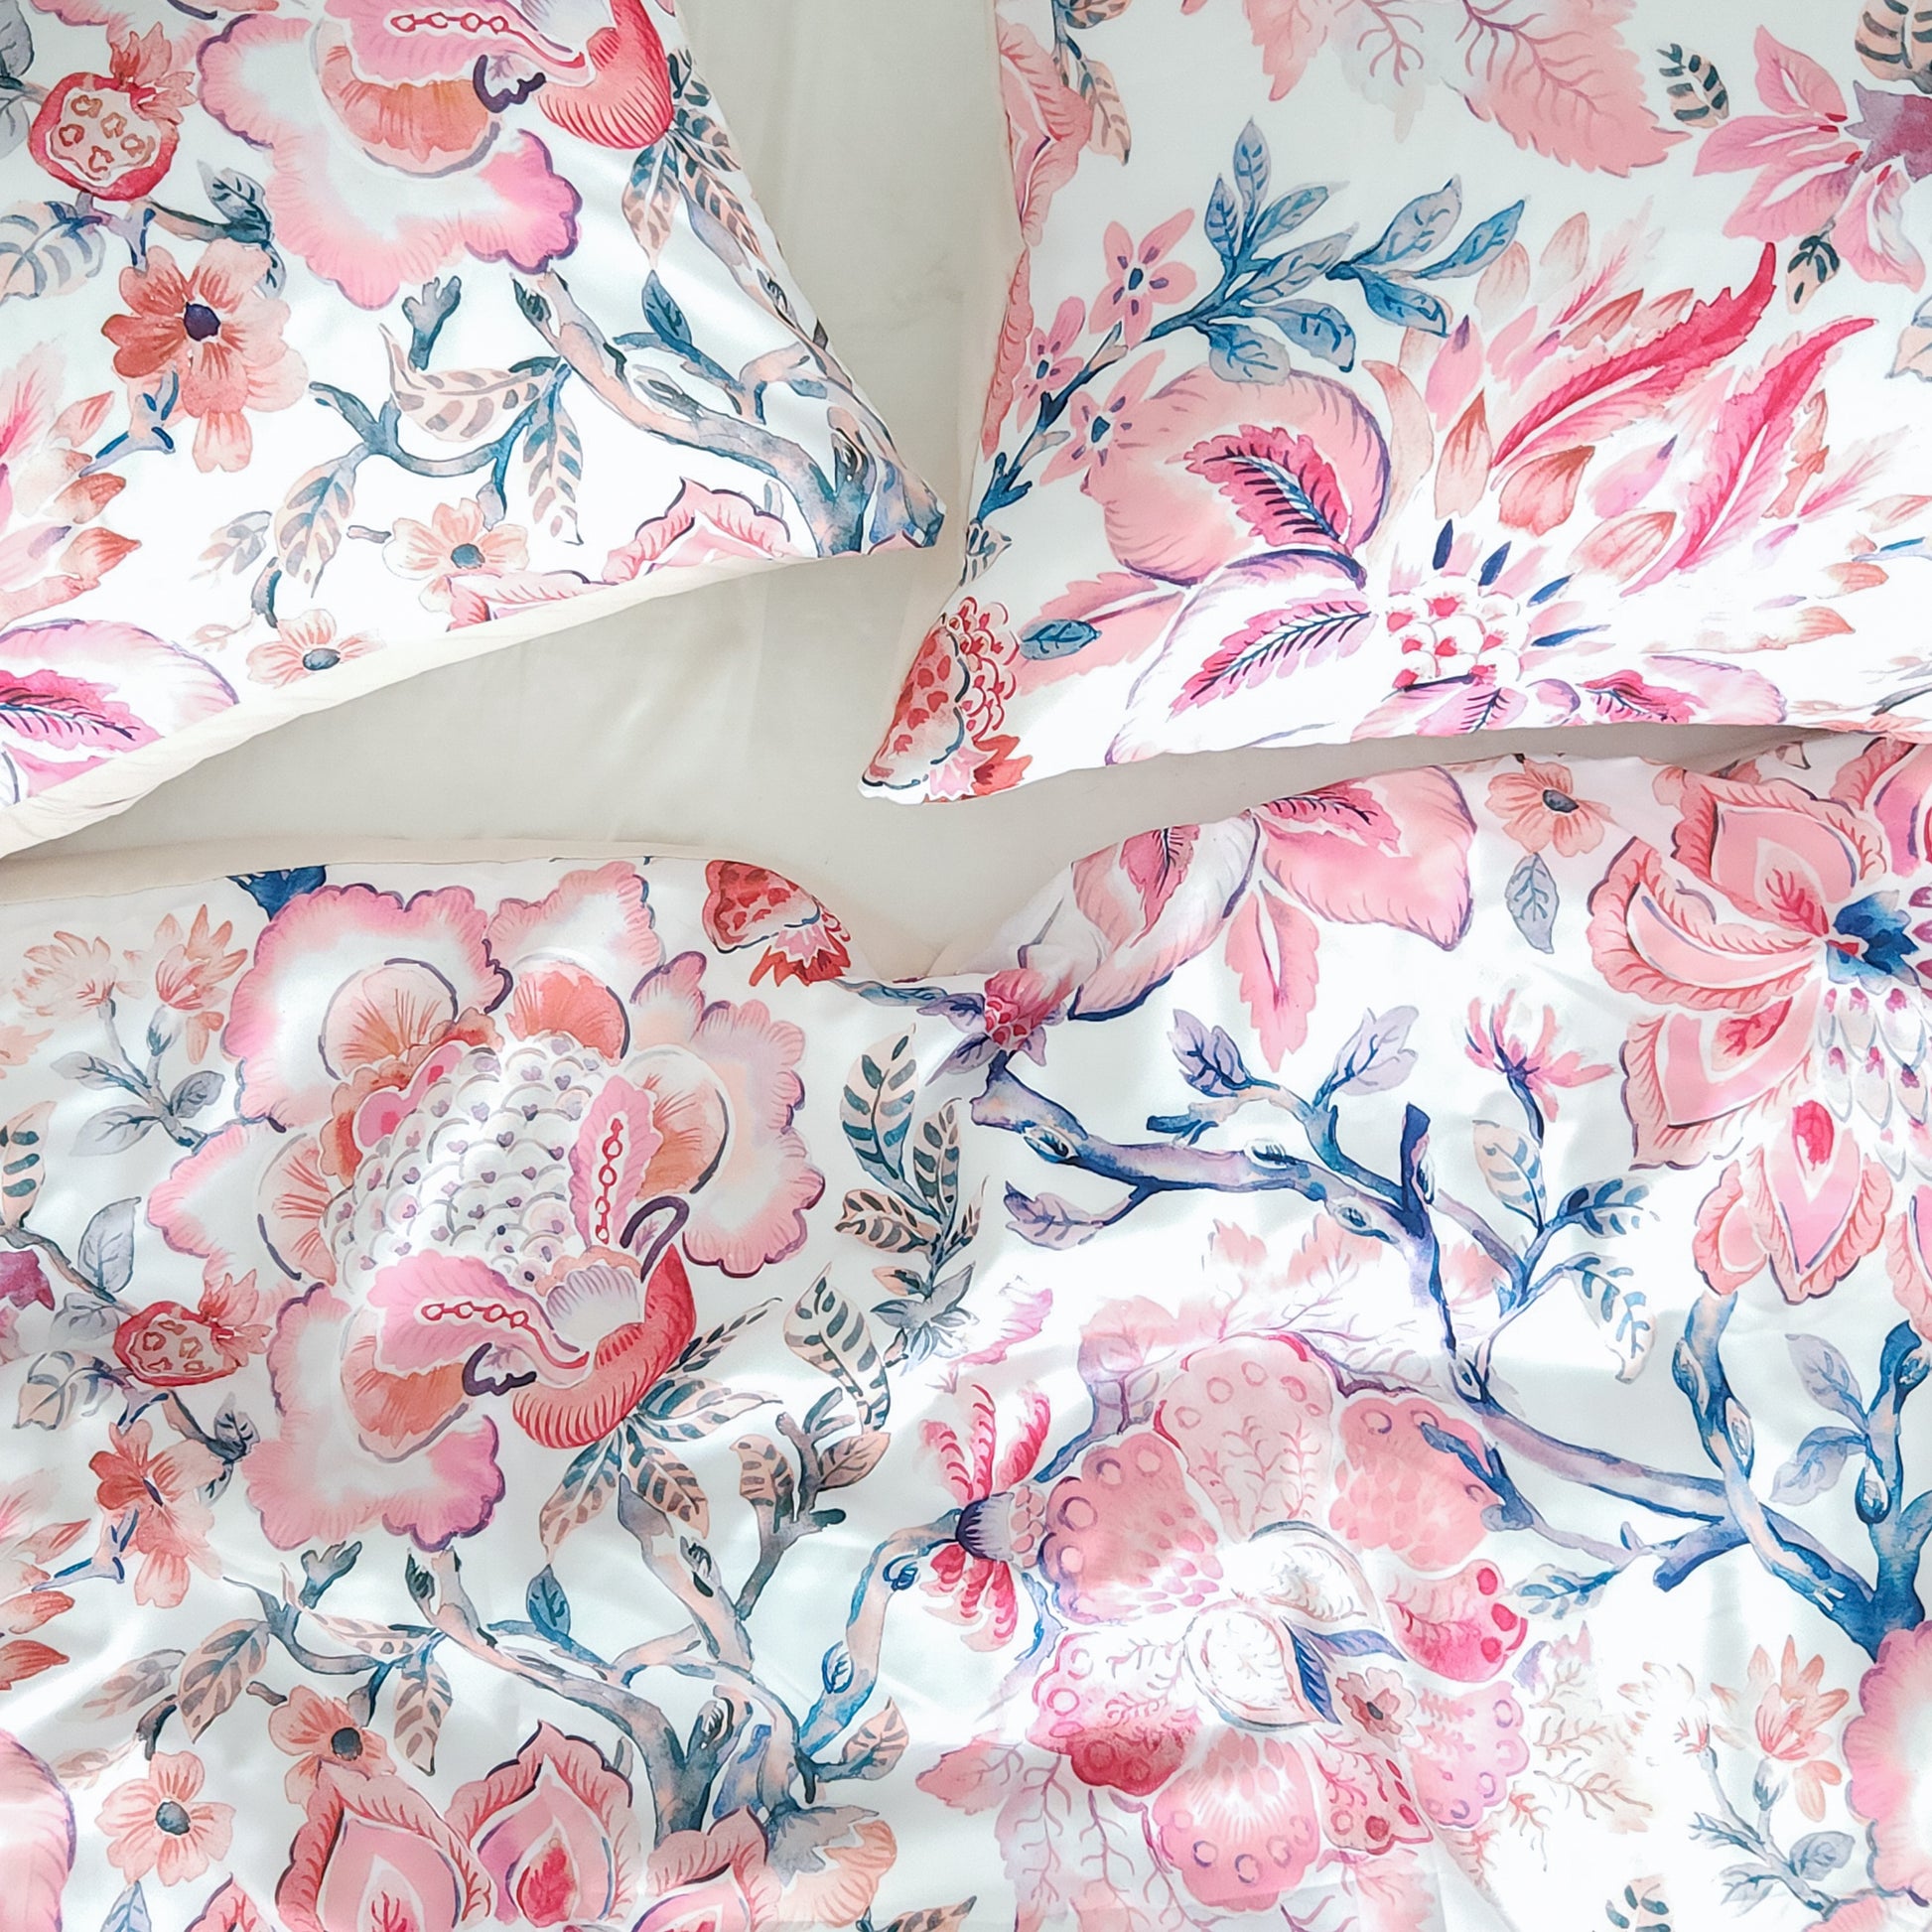 Indira Pink & White Floral Boho Duvet Cover Set | Dusk & Bloom